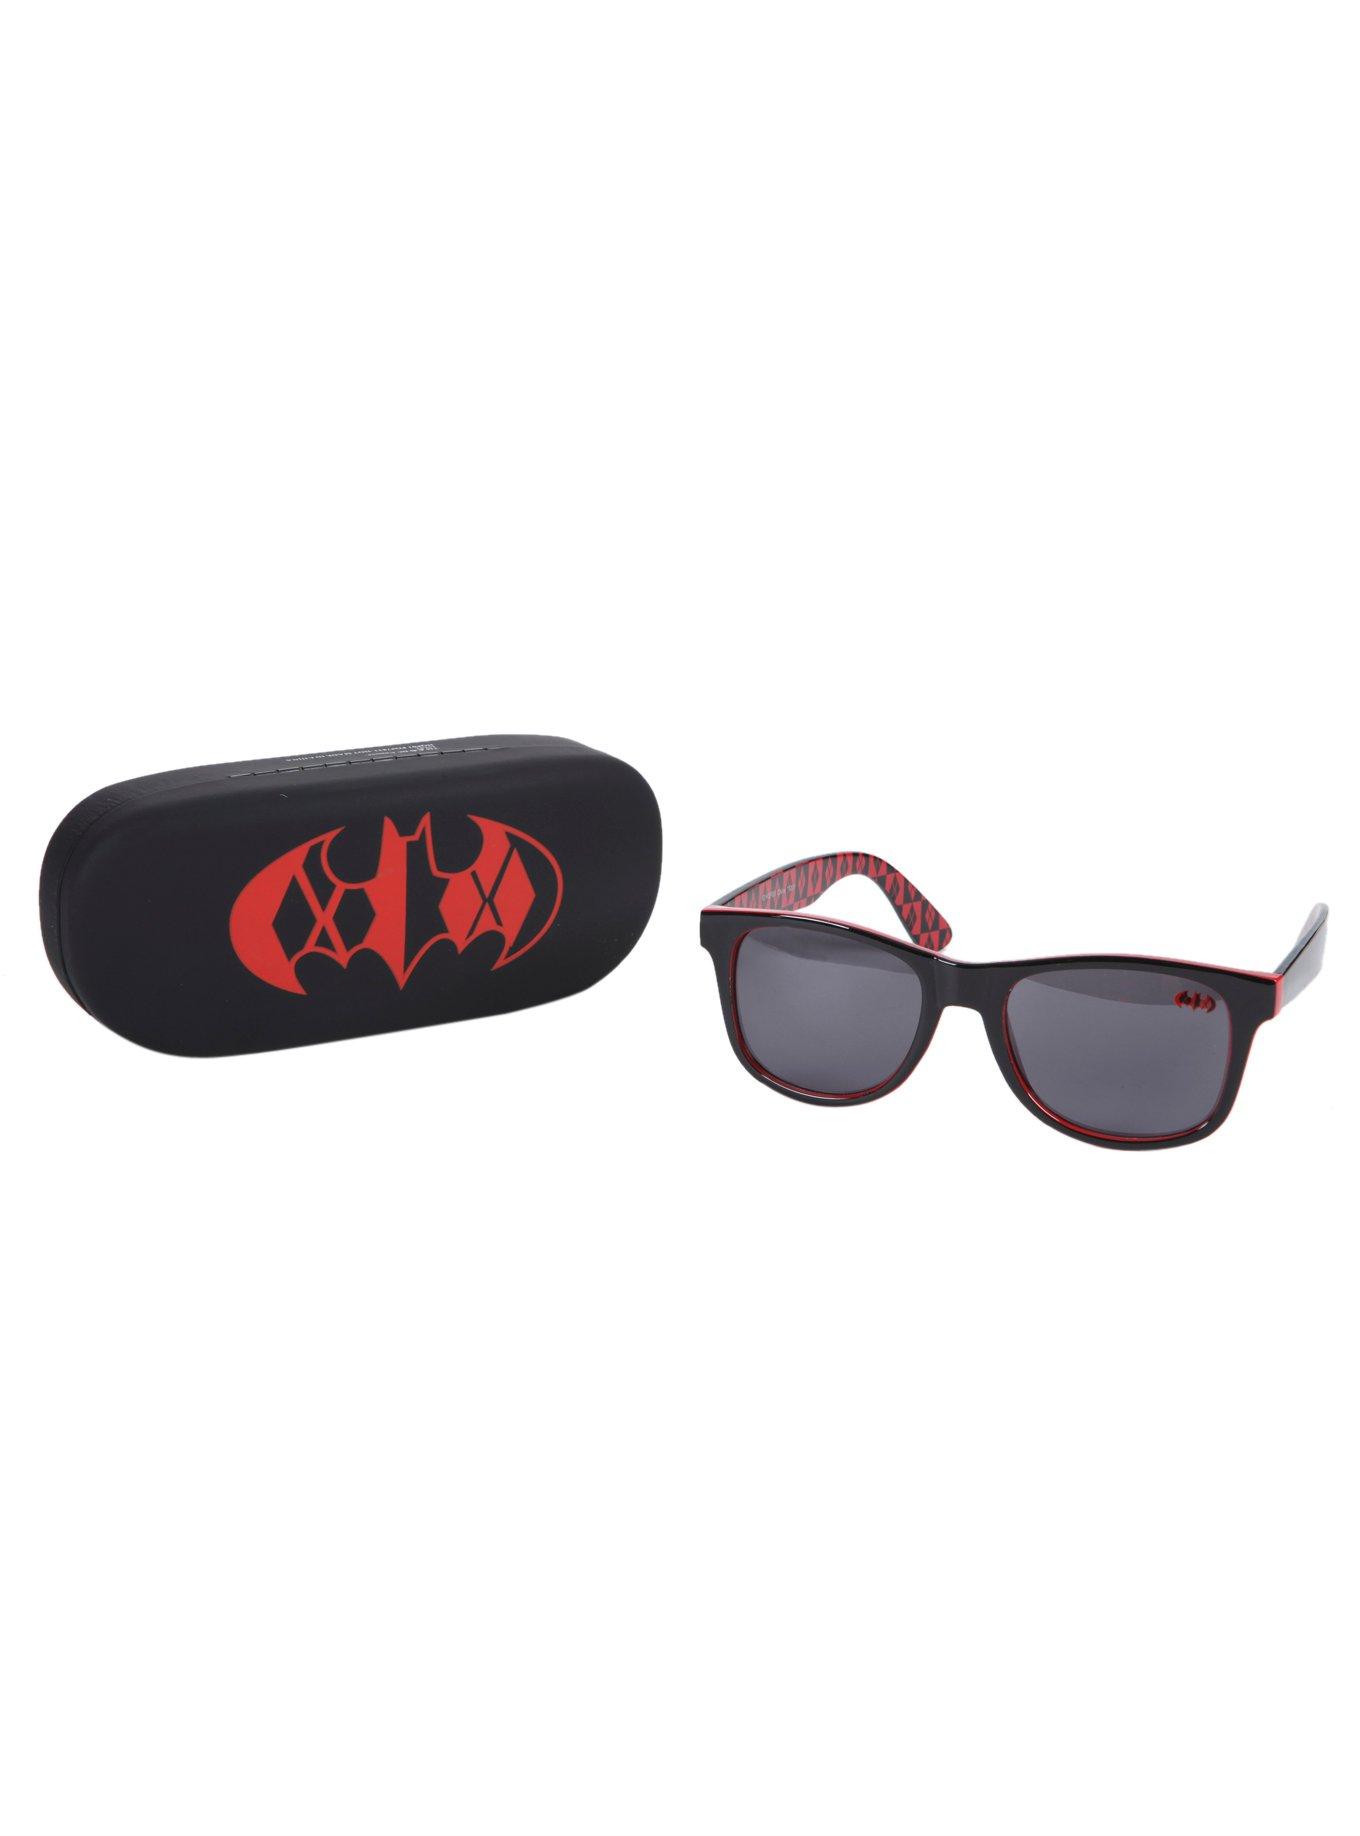 DC Comics Harley Quinn Sunglasses & Case Gift Set, , hi-res